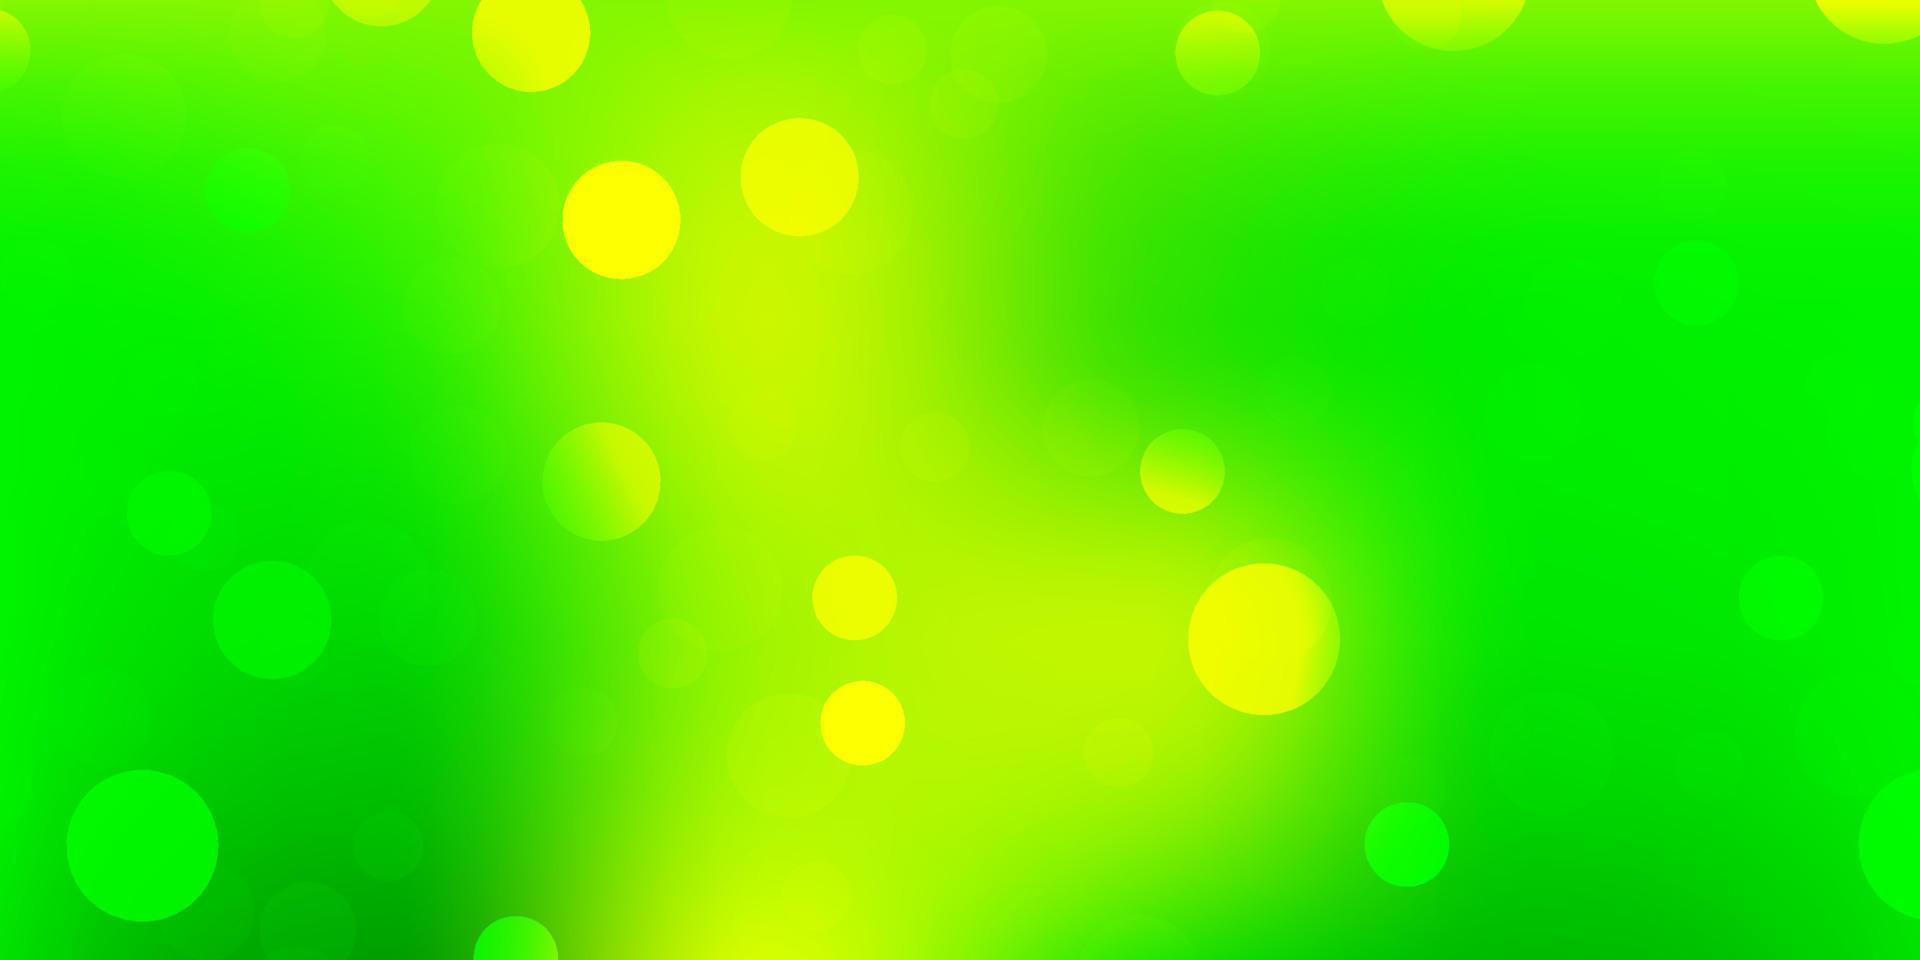 ljusgrönt, gult vektormönster med abstrakta former. vektor